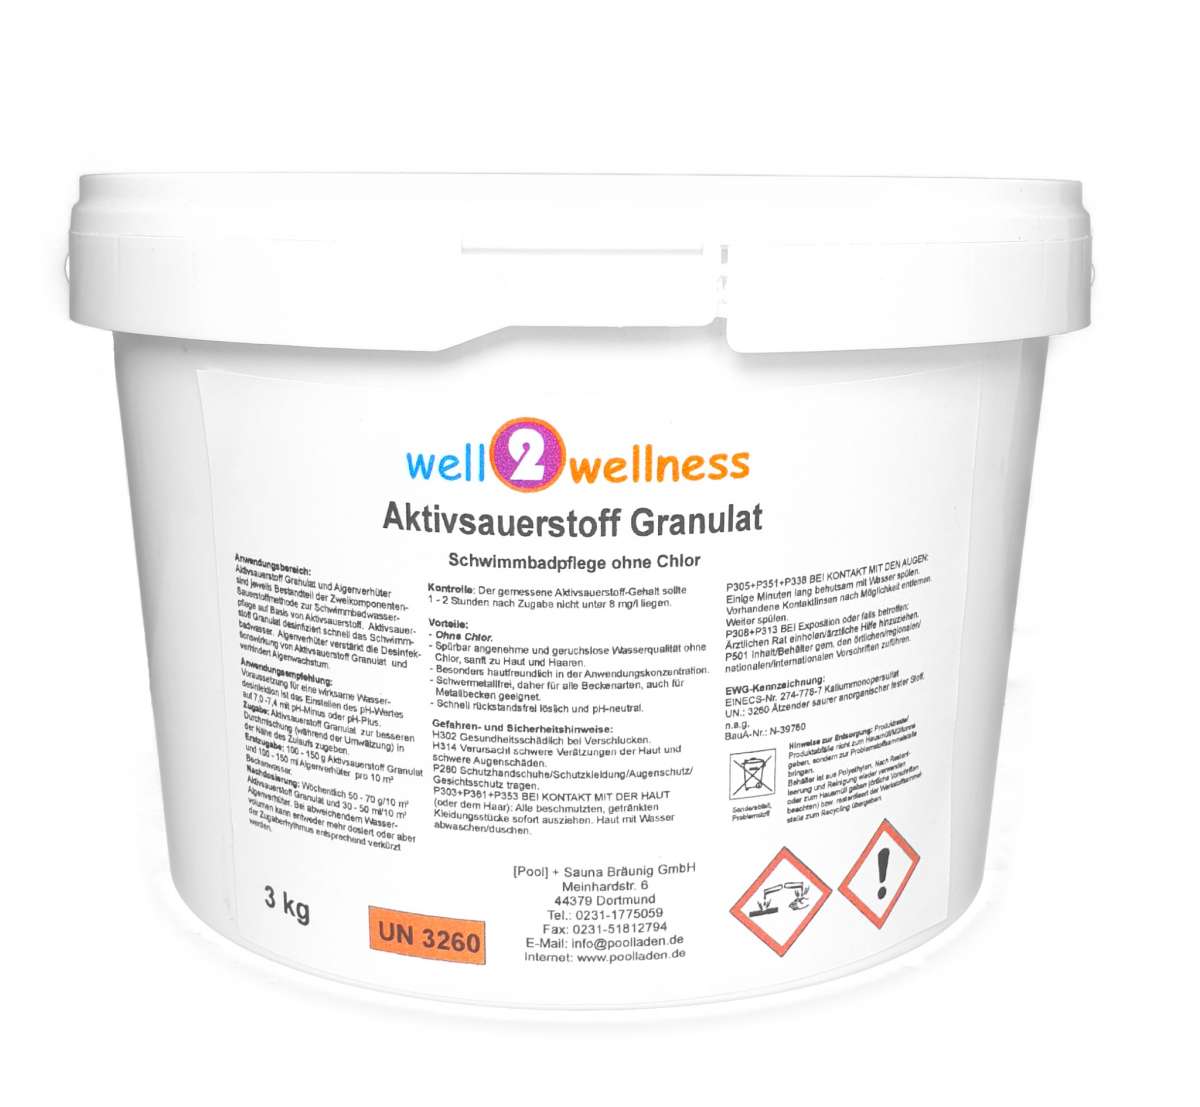 well2wellness® Aktivsauerstoff Granulat